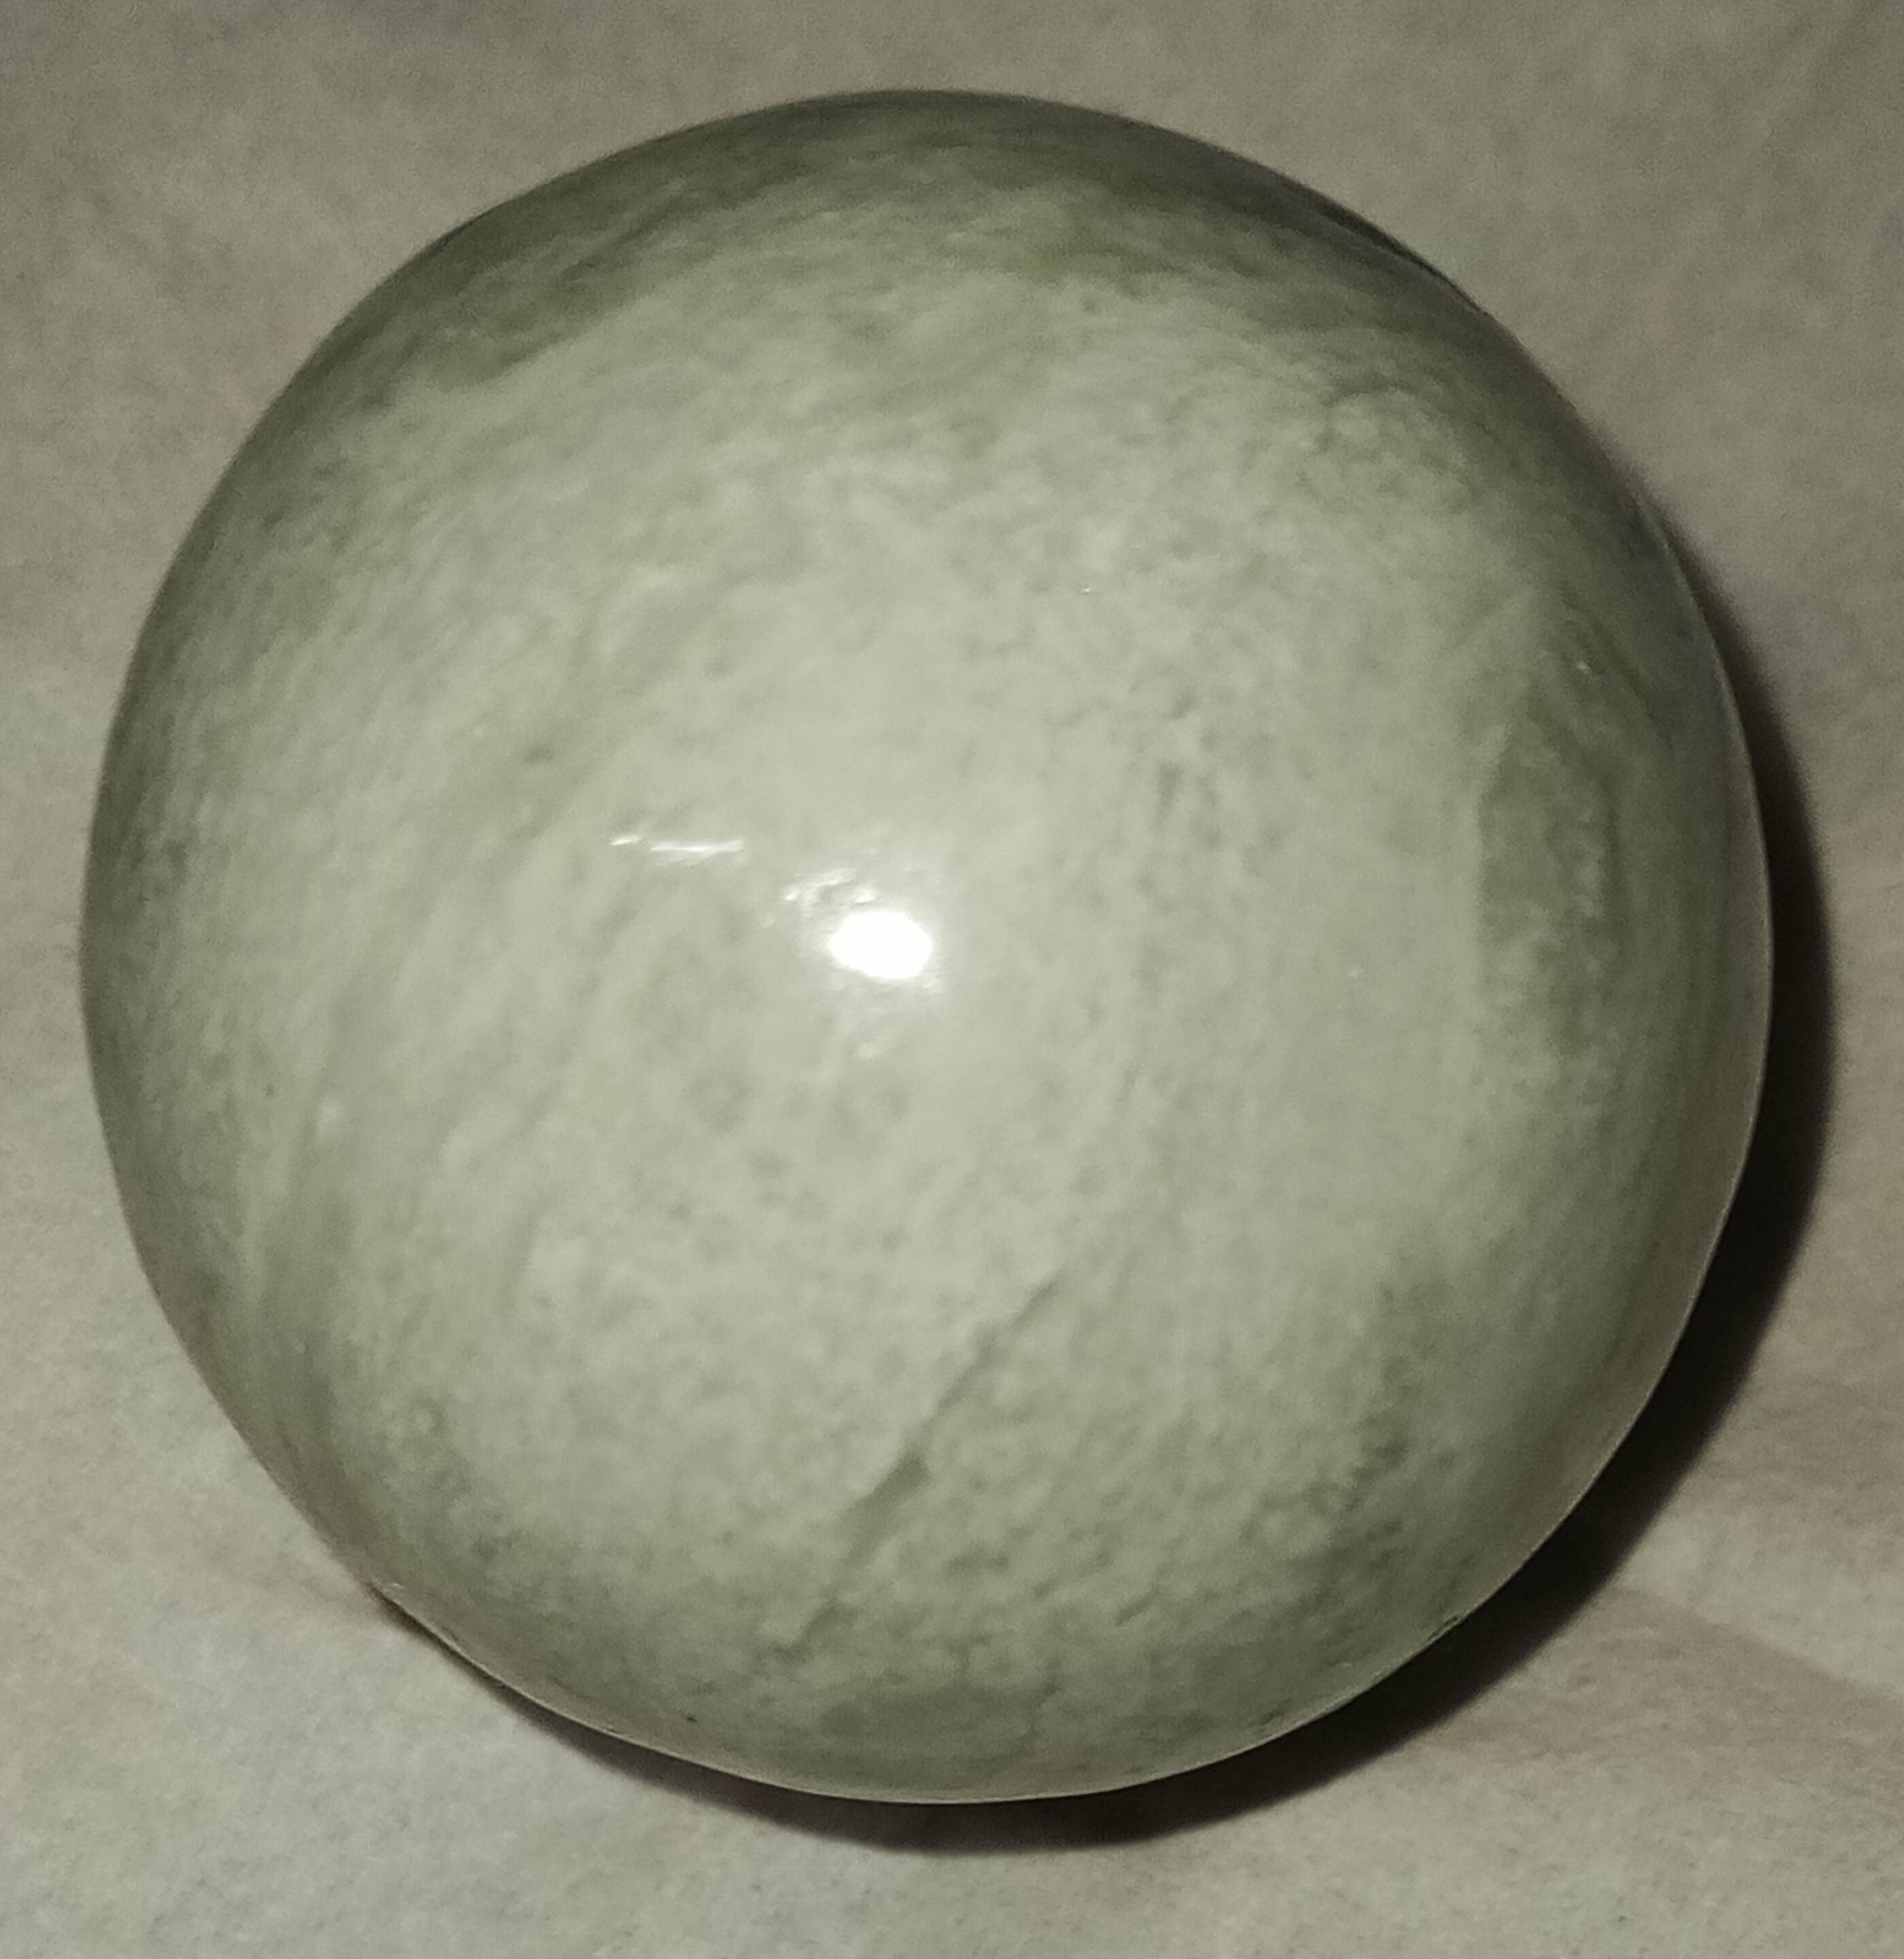 Jade (Serpentine) sphere